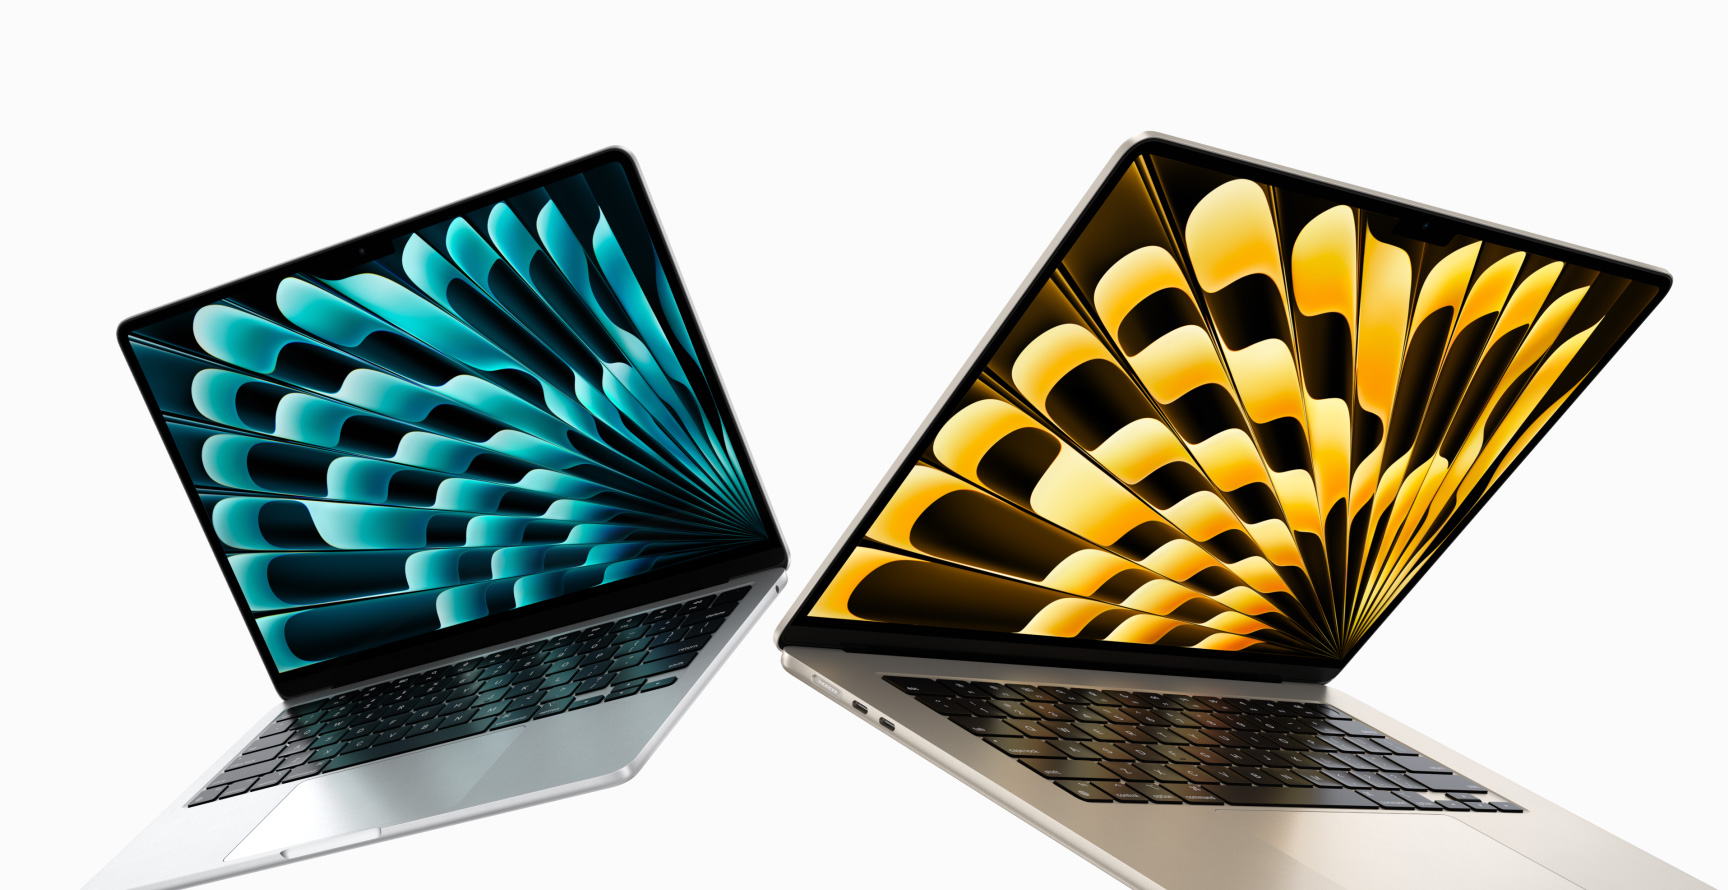 Vista frontal de los modelos de las MacBook Air de 13 y 15 pulgadas color plata y blanco estelar que están levemente abiertas y que destacan los distintos tamaños de las pantallas.